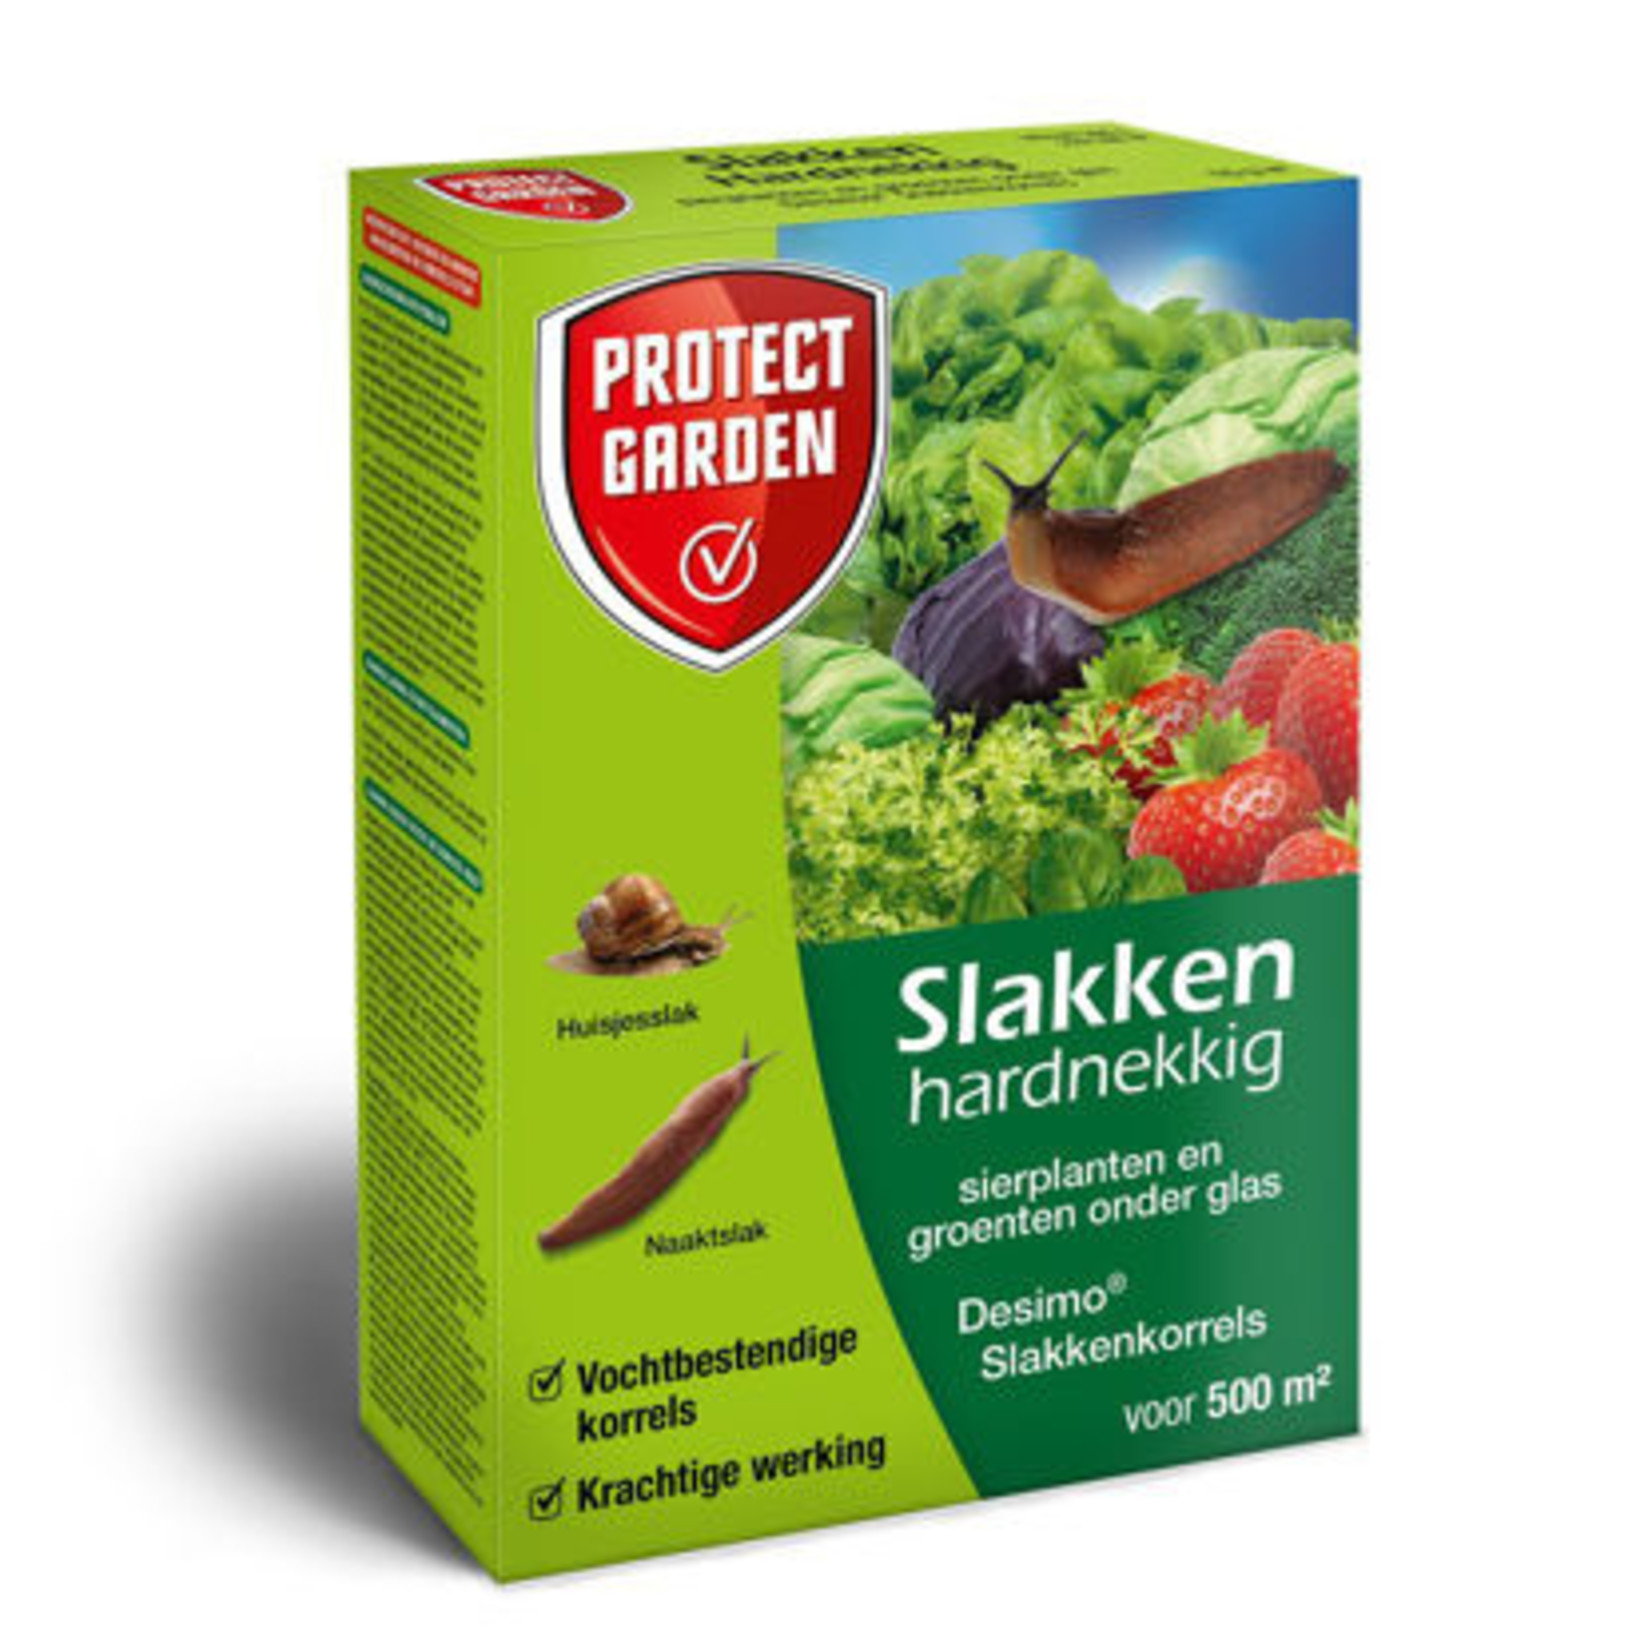 Protect Garden Desimo slakkenkorrels 250gr. -Protect Garden-